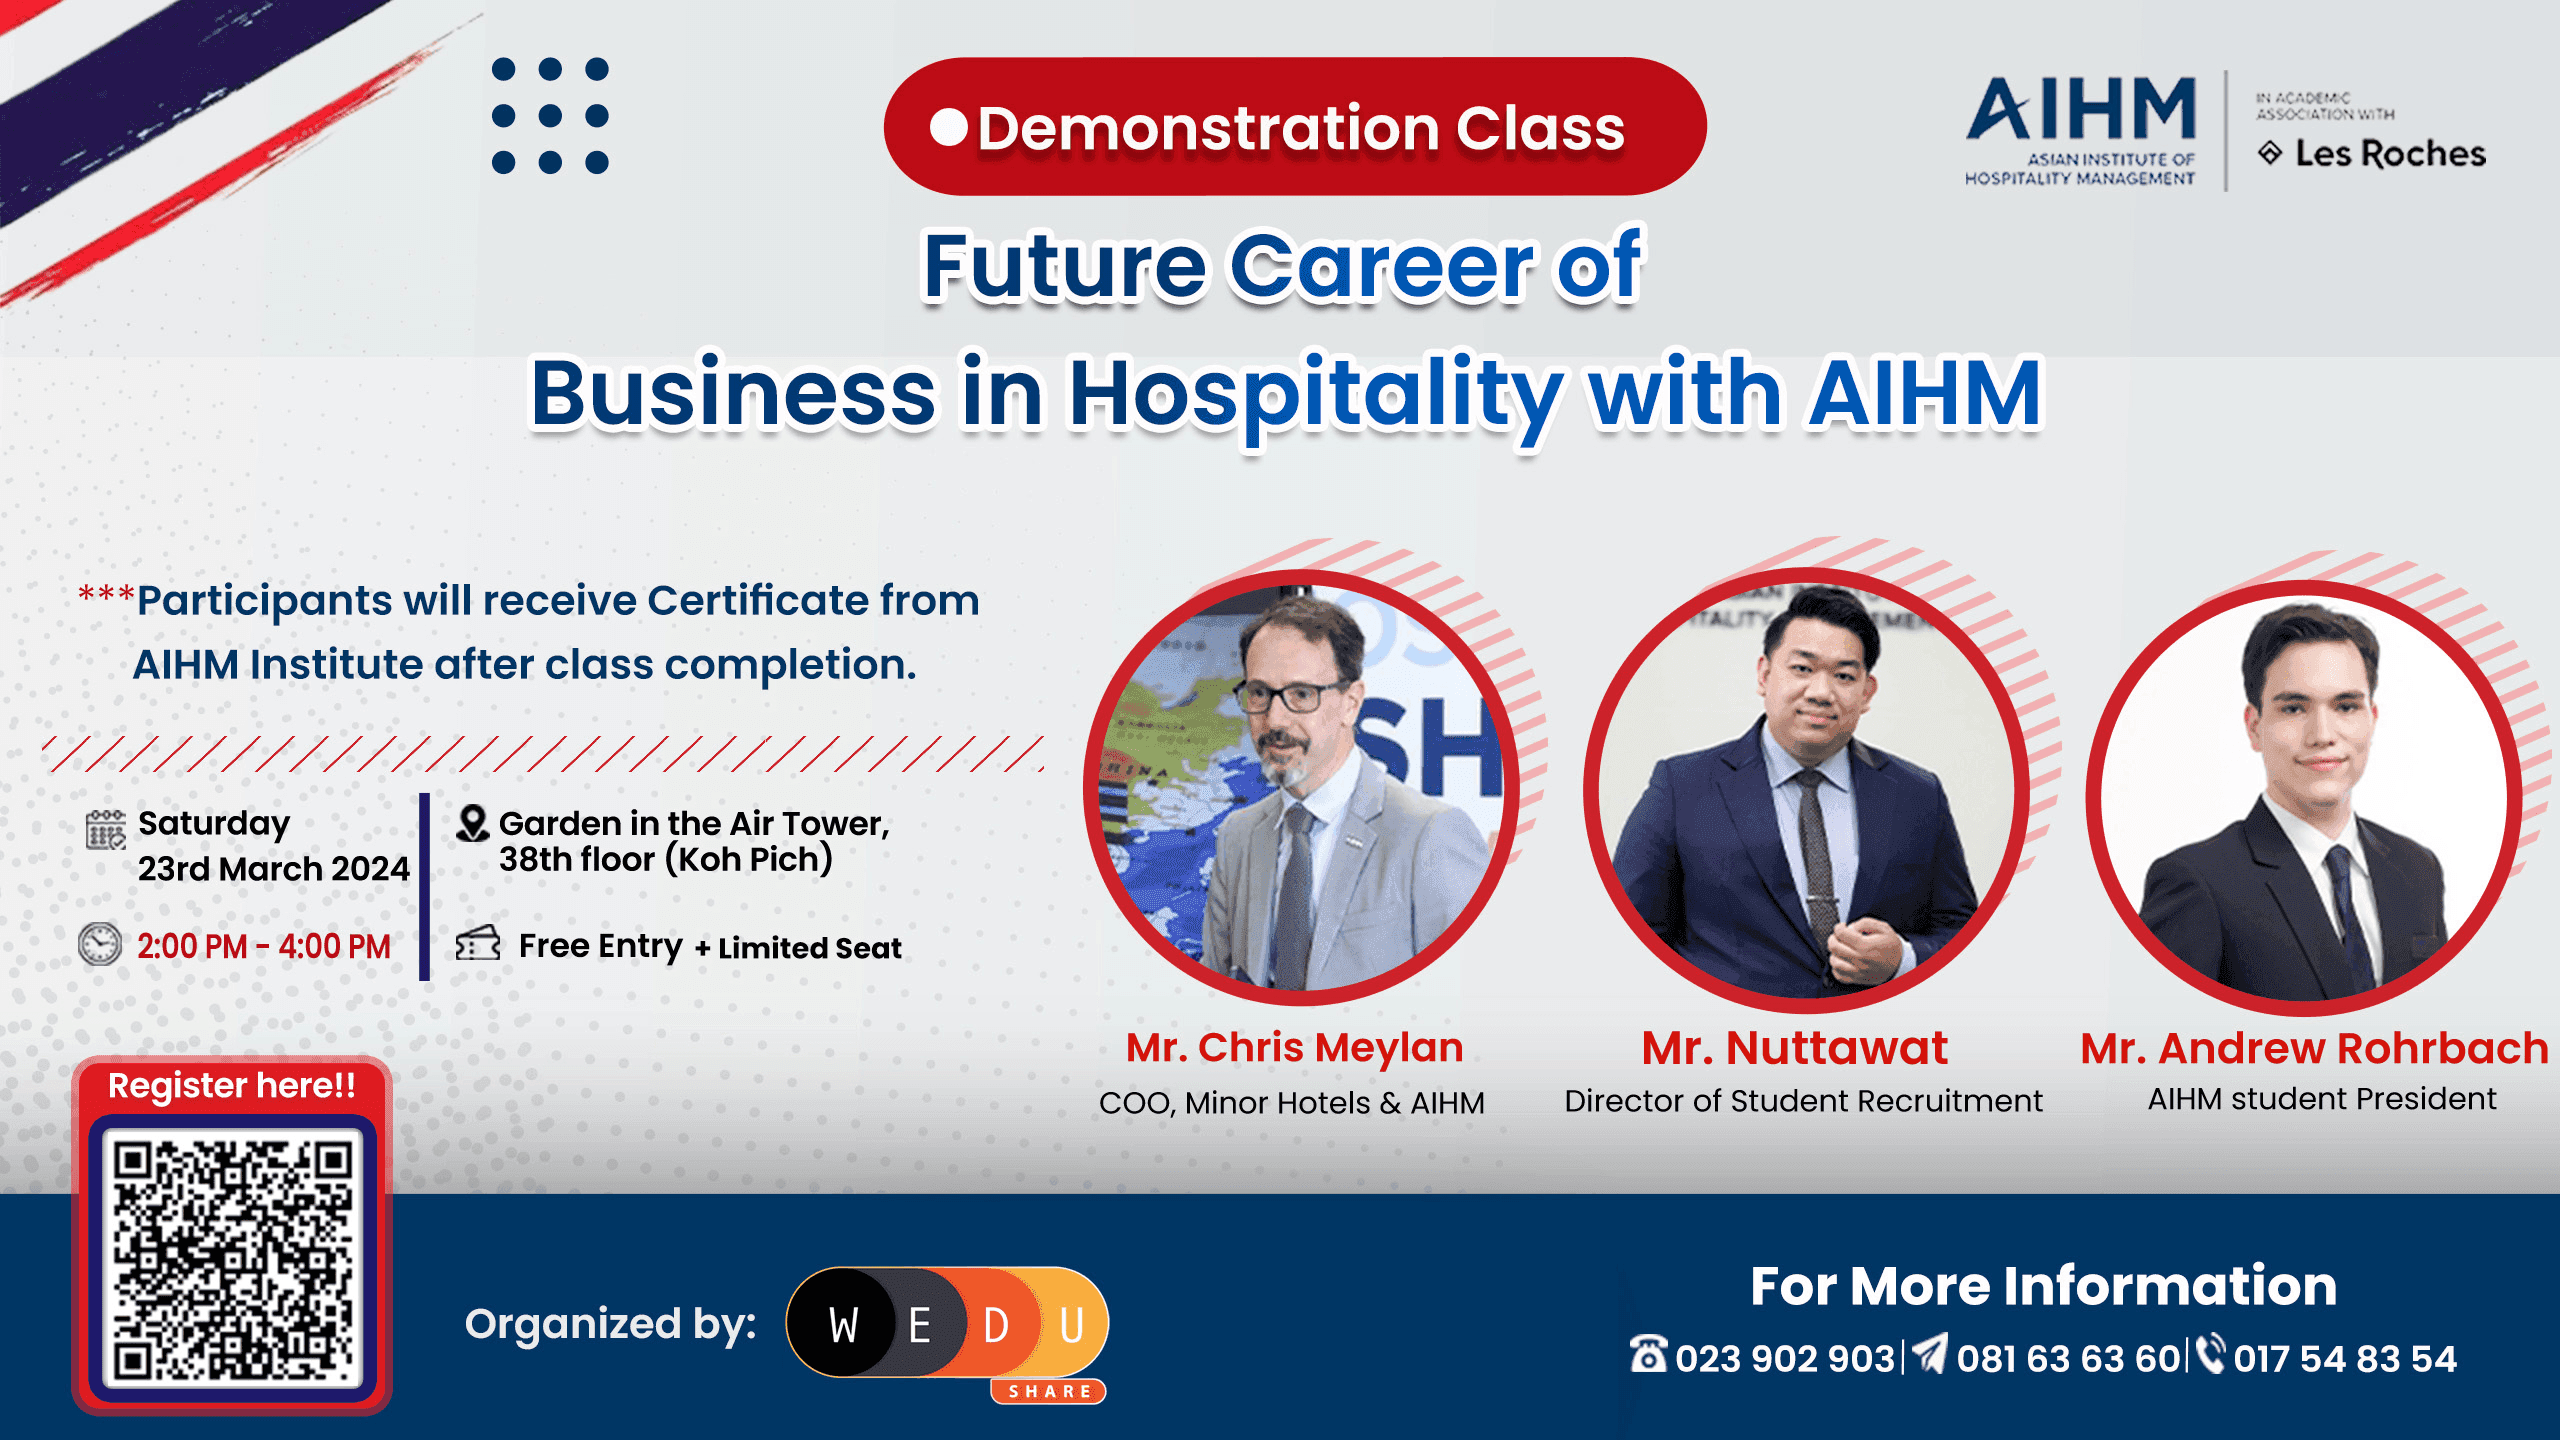 កម្មវិធីសិក្ខាសាលា និង Demonstration Class របស់ AIHM ប្រទេសថៃ ស្តីអំពី៖ "Future Career of Business in Hospitality"